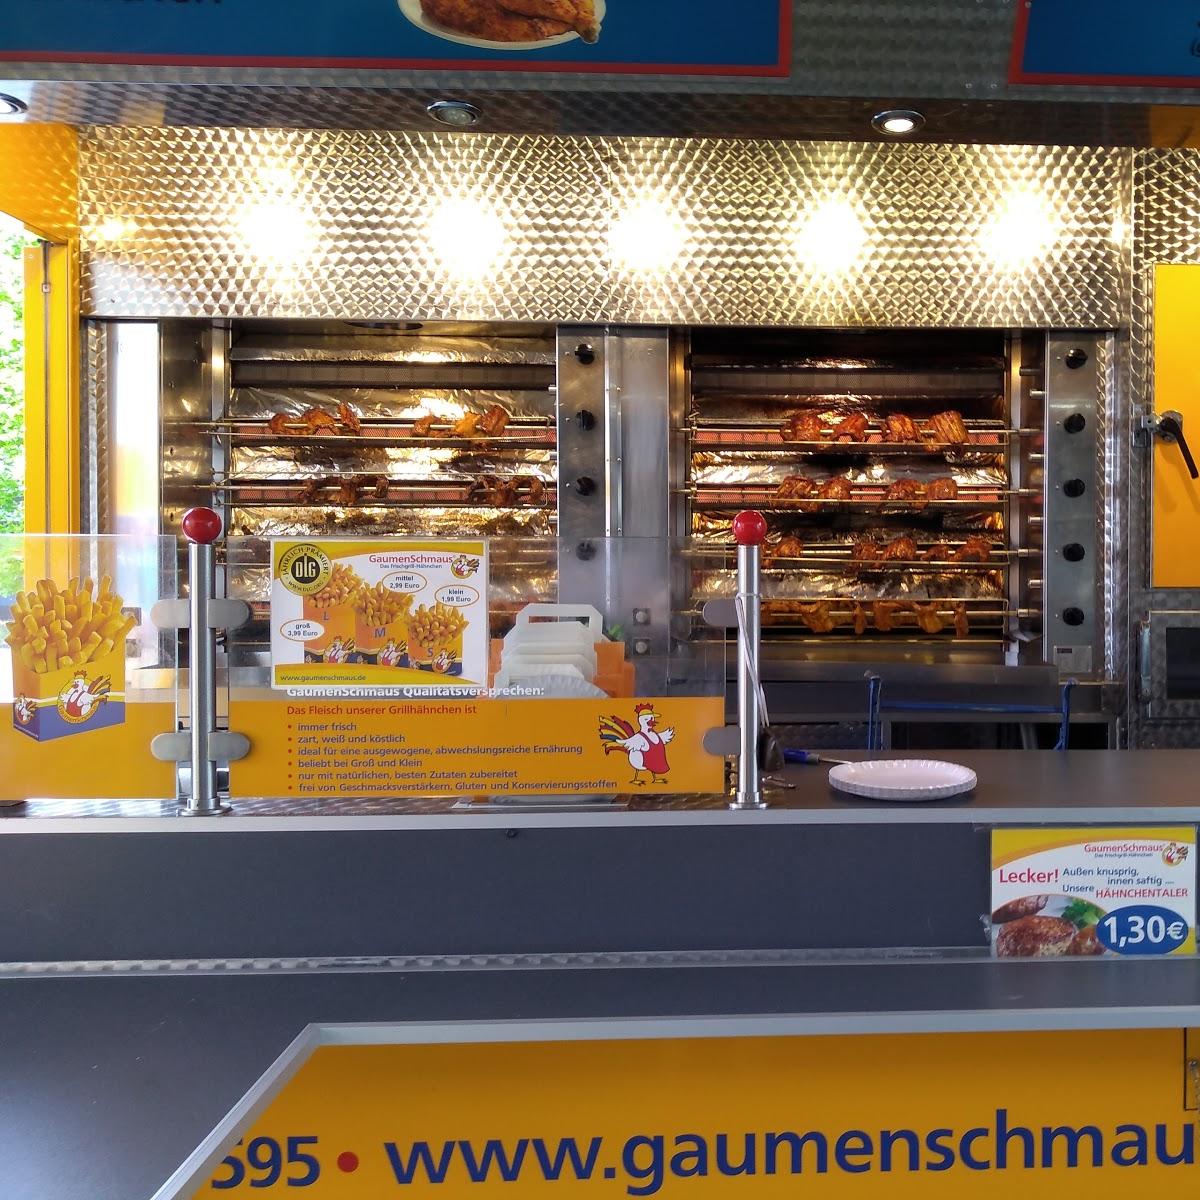 Restaurant "Gaumenschmaus Frischgrill GmbH" in Langerringen